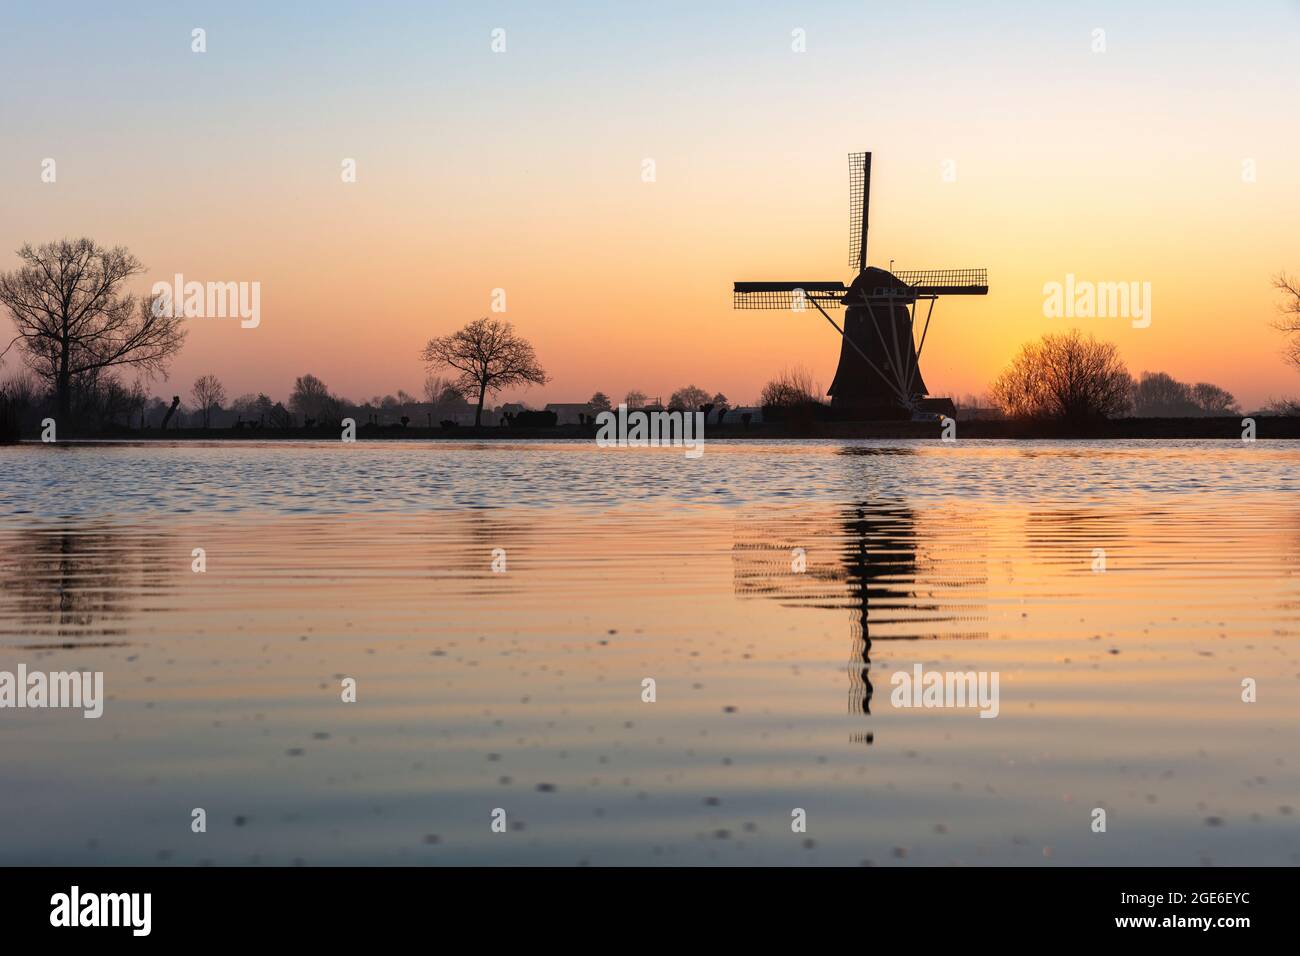 Holanda, Nigtevecht, molino de viento a lo largo del río Vecht. Amanecer. Foto de stock